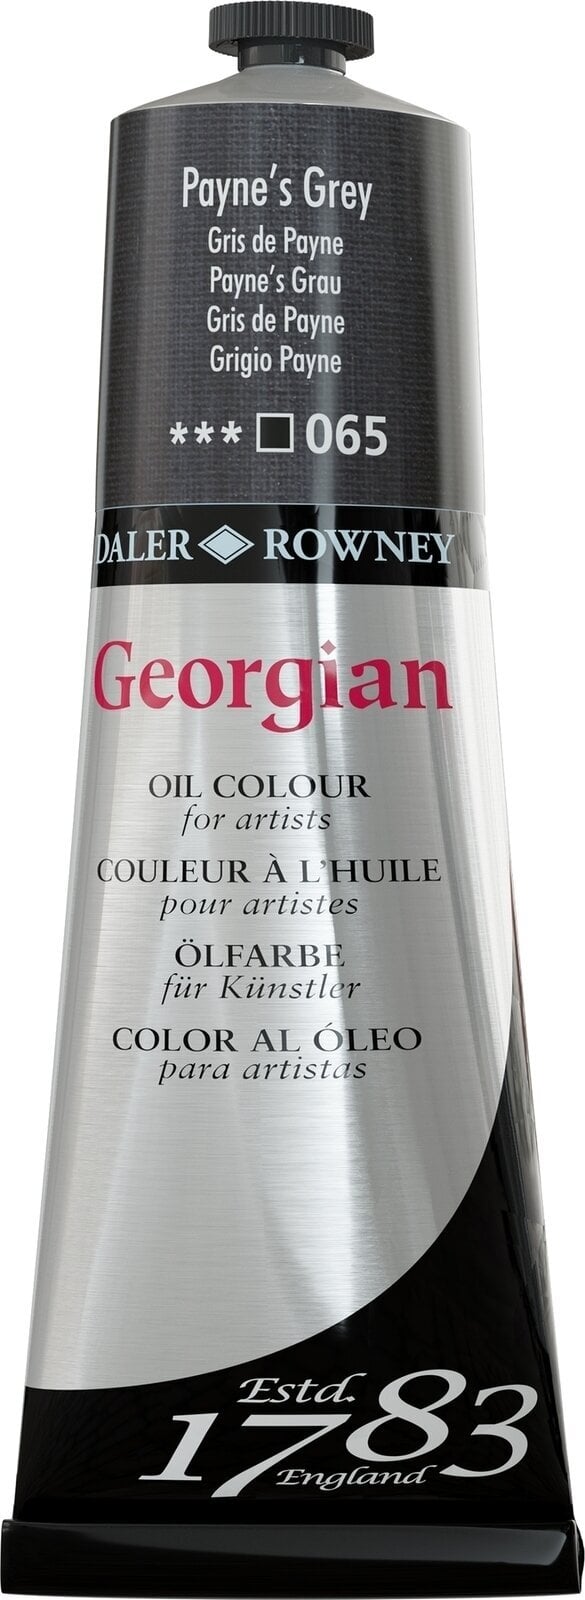 Ölfarbe Daler Rowney Georgian Ölgemälde Payne's Grey 225 ml 1 Stck